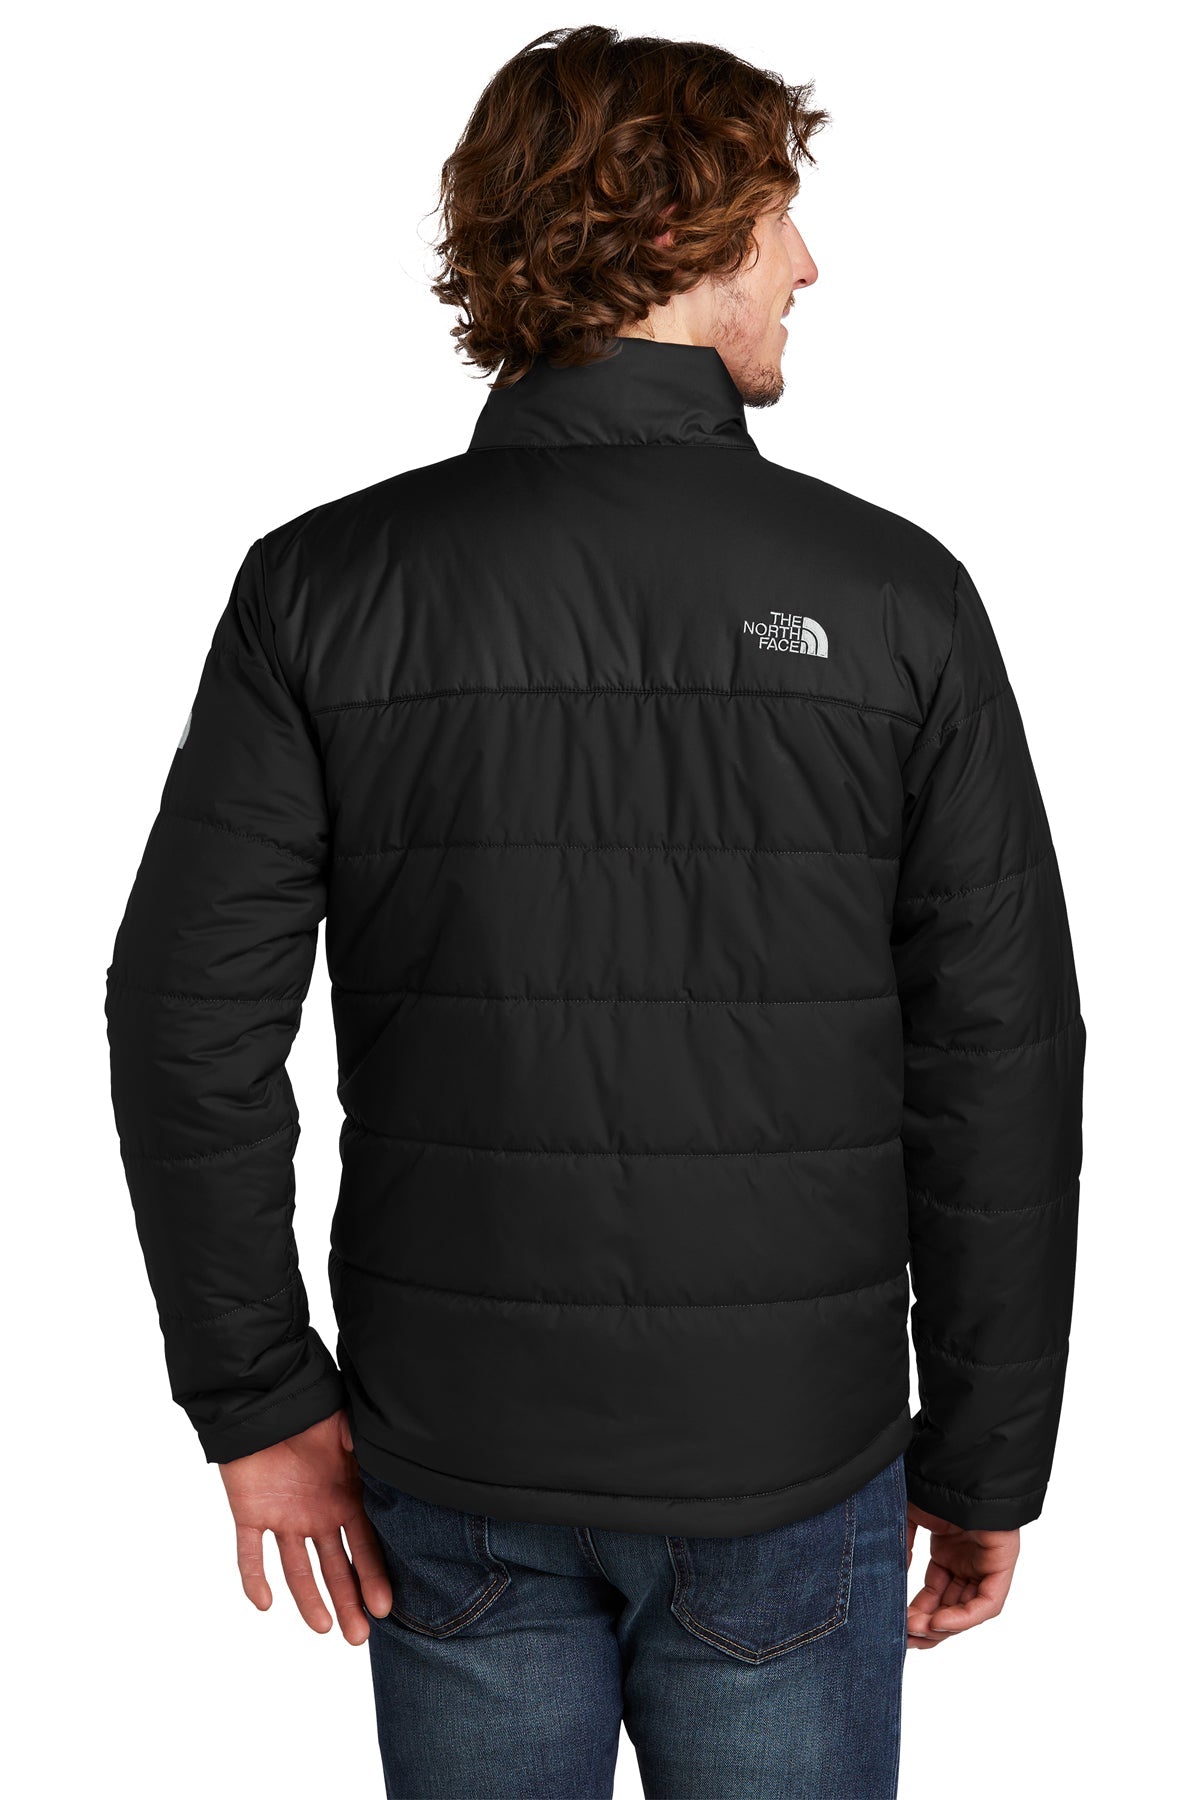 The North Face TNF Black NF0A529K company logo jackets